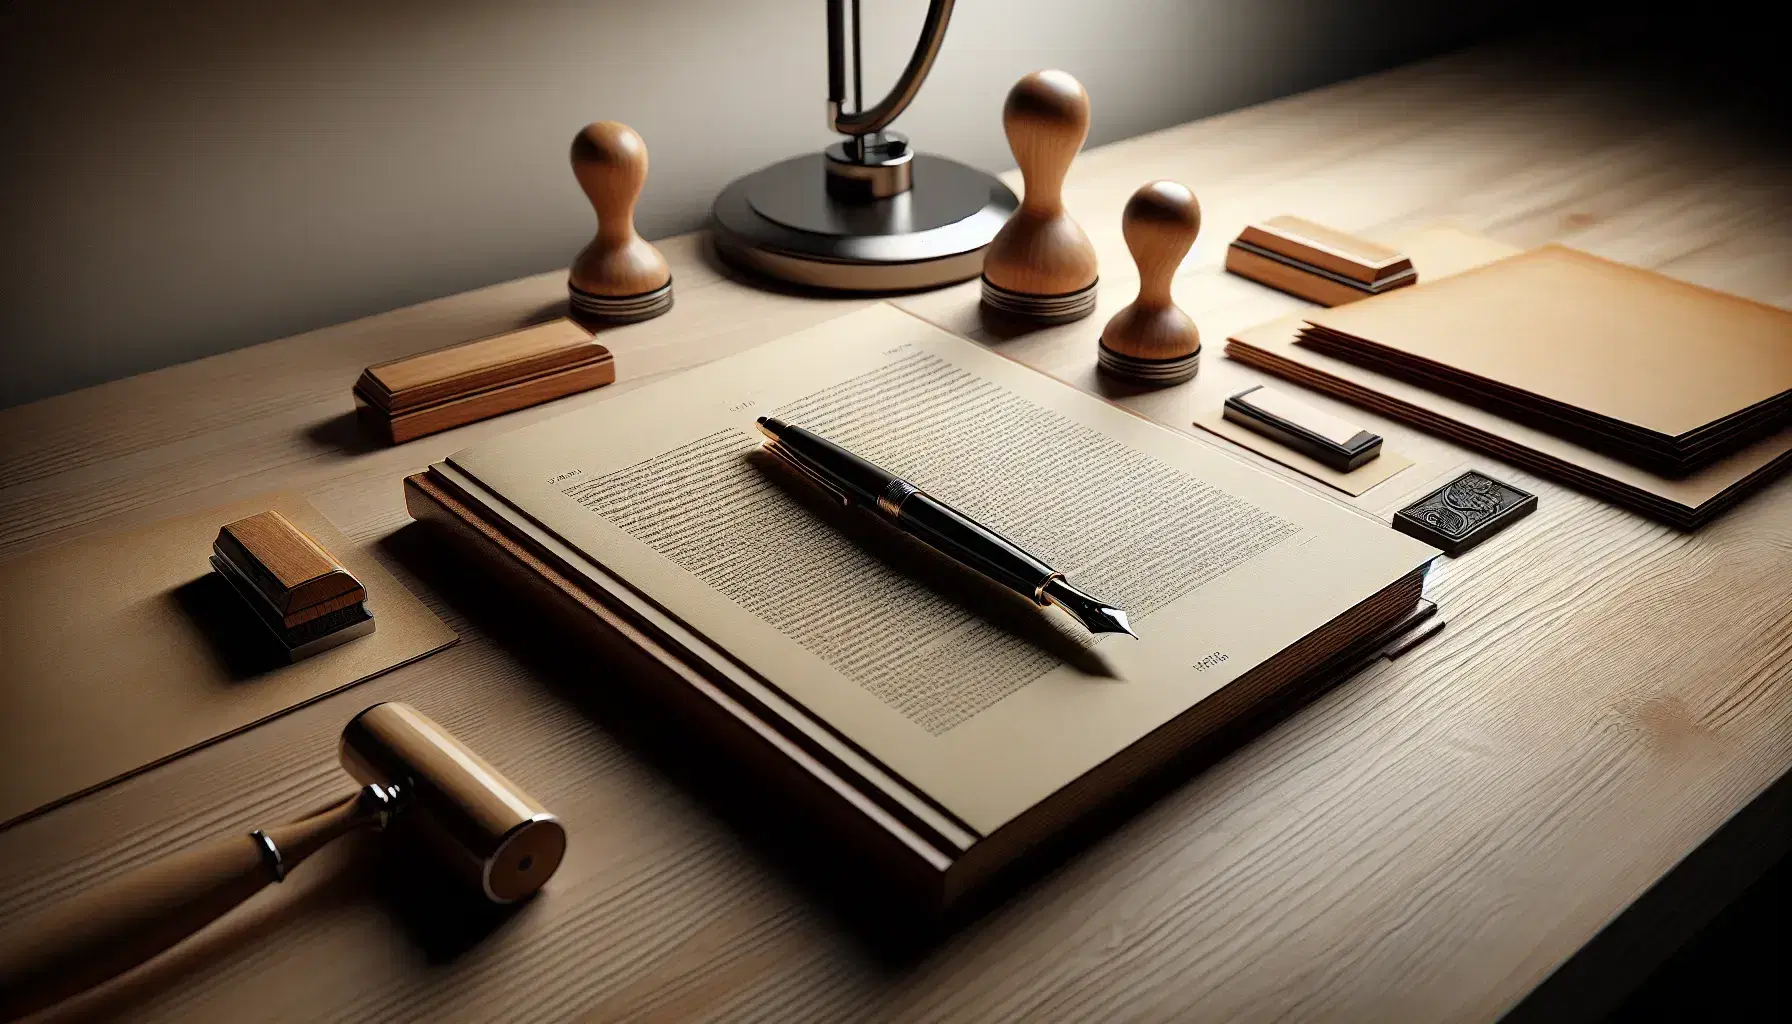 Escritorio de madera con libro abierto, pluma estilográfica, sello de goma y documentos bajo la luz cálida de una lámpara de escritorio.